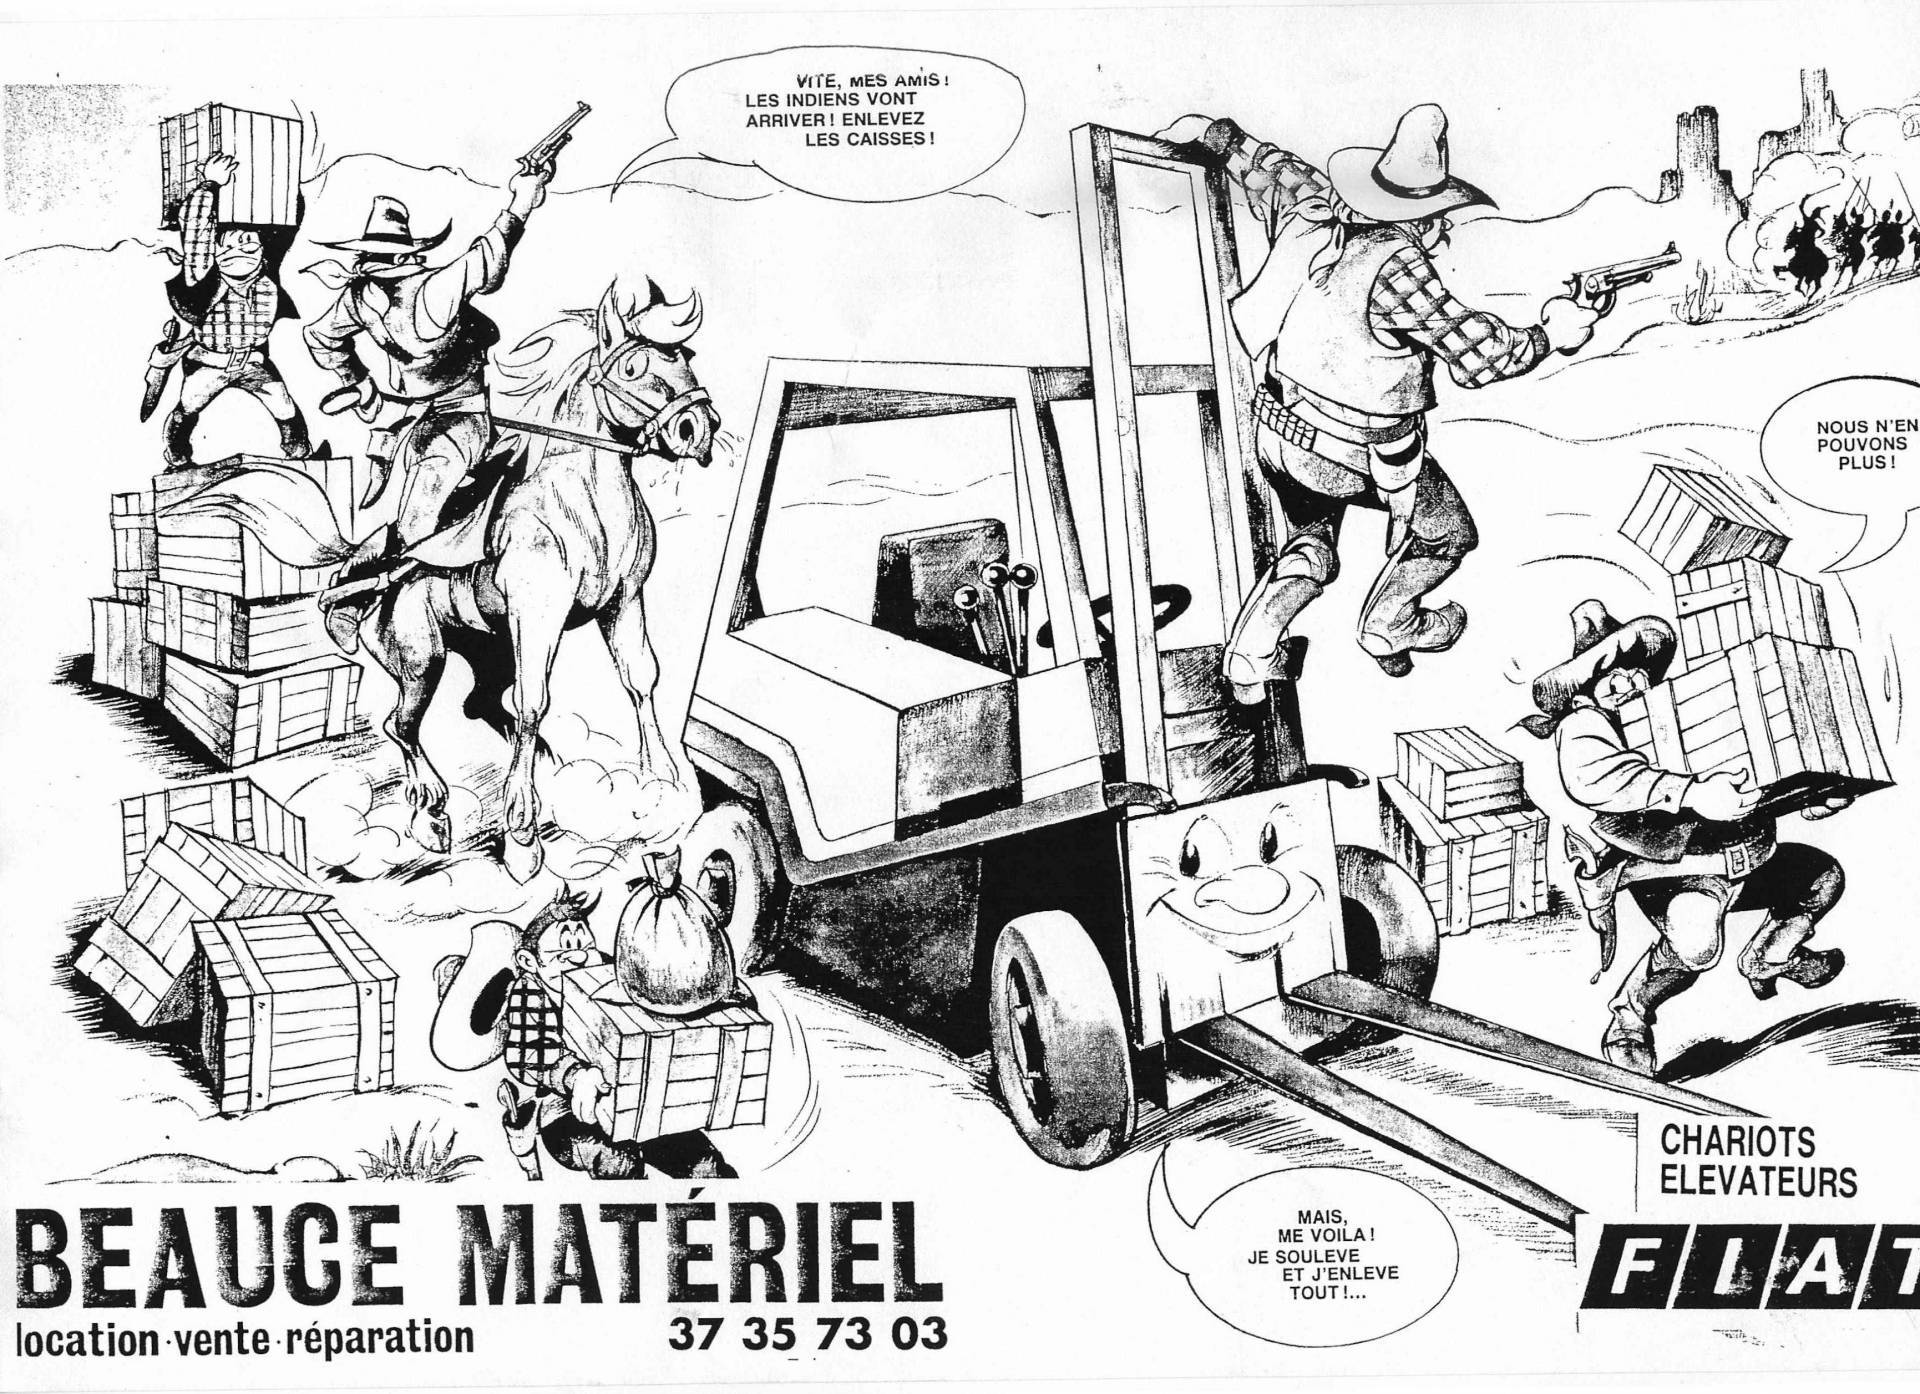 2022-BEAUCE-MATERIEL-entreprise-location-vente-reparation-chariot-elevateur-dessin-cowboys